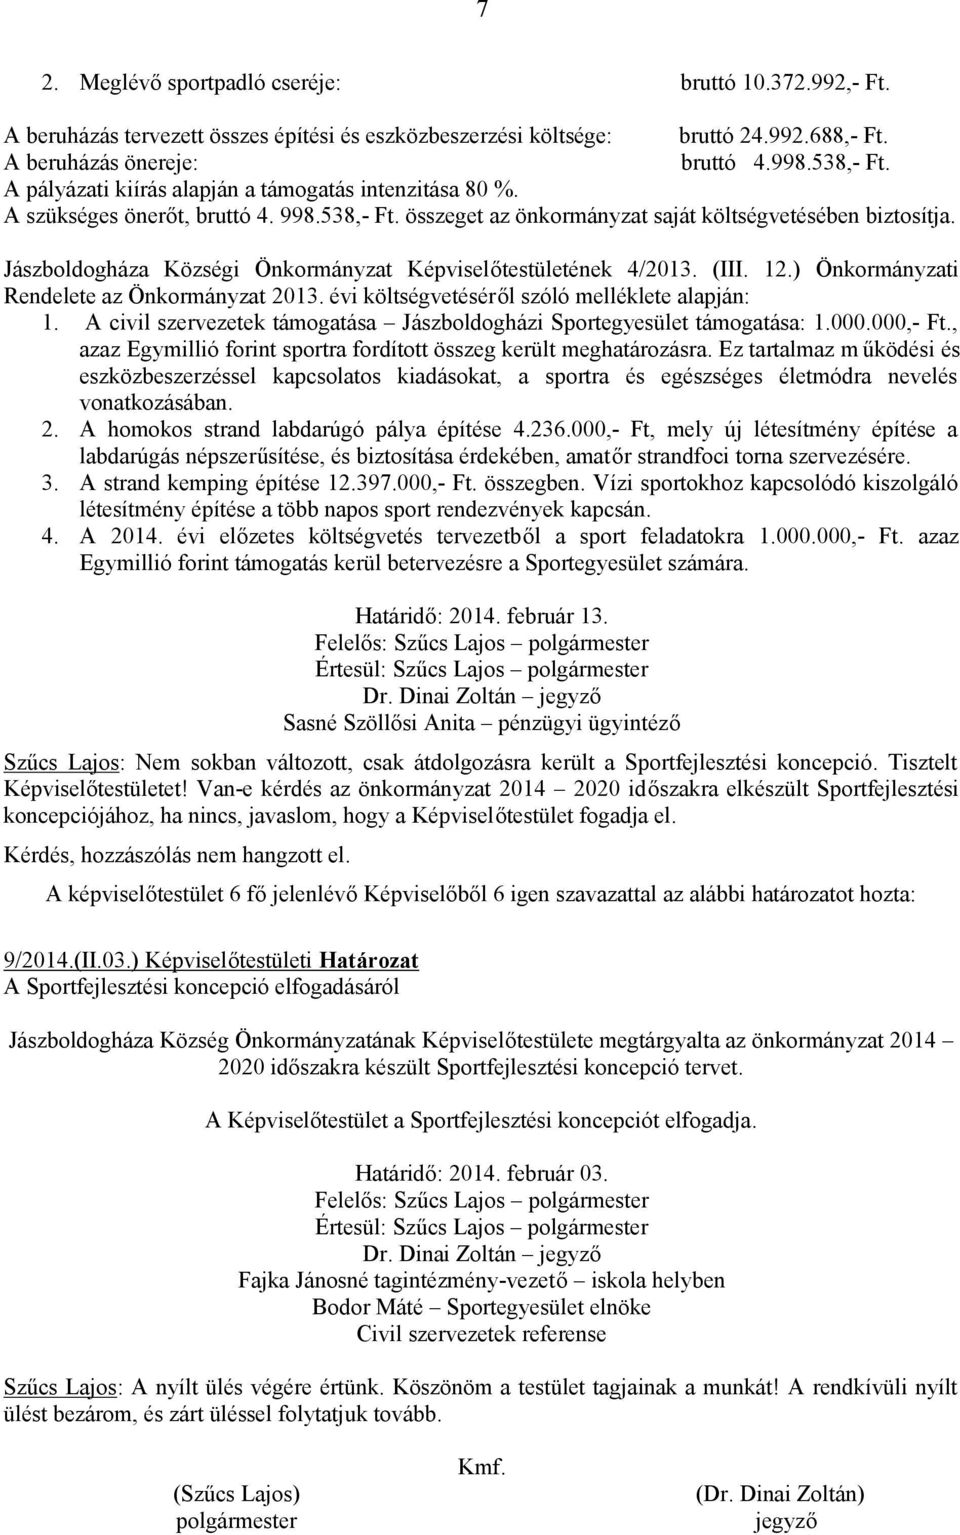 Jászboldogháza Községi Önkormányzat Képviselőtestületének 4/2013. (III. 12.) Önkormányzati Rendelete az Önkormányzat 2013. évi költségvetéséről szóló melléklete alapján: 1.